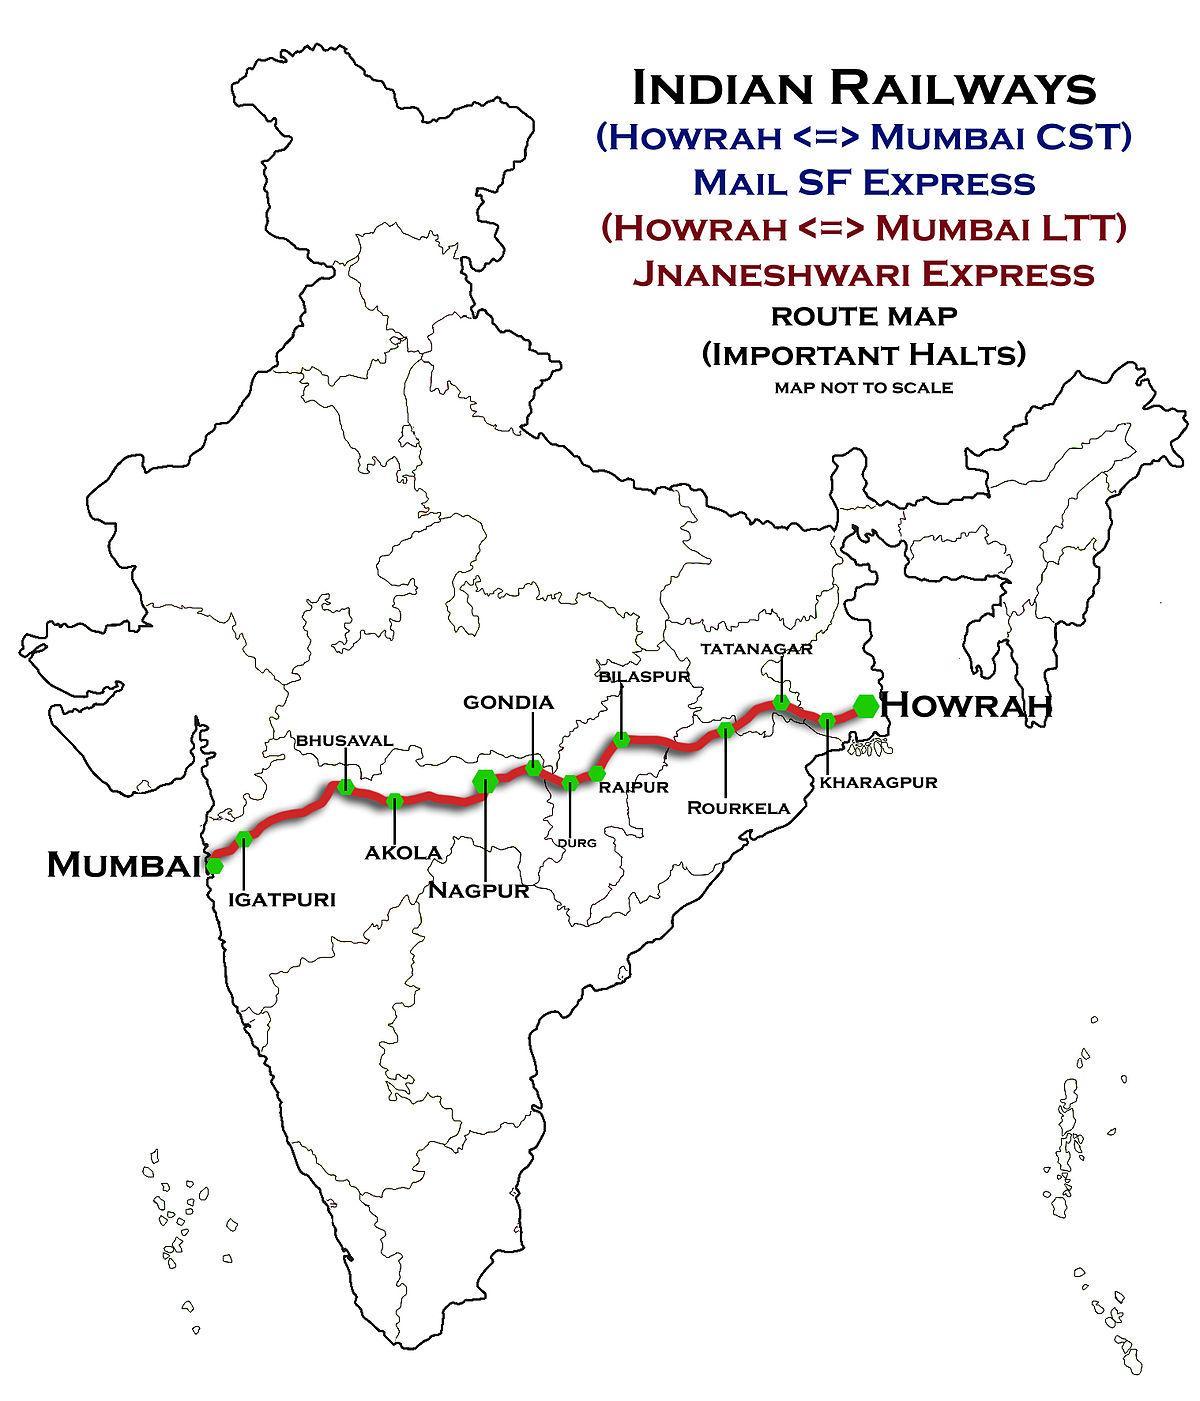 ناجبور مومباي express highway خريطة